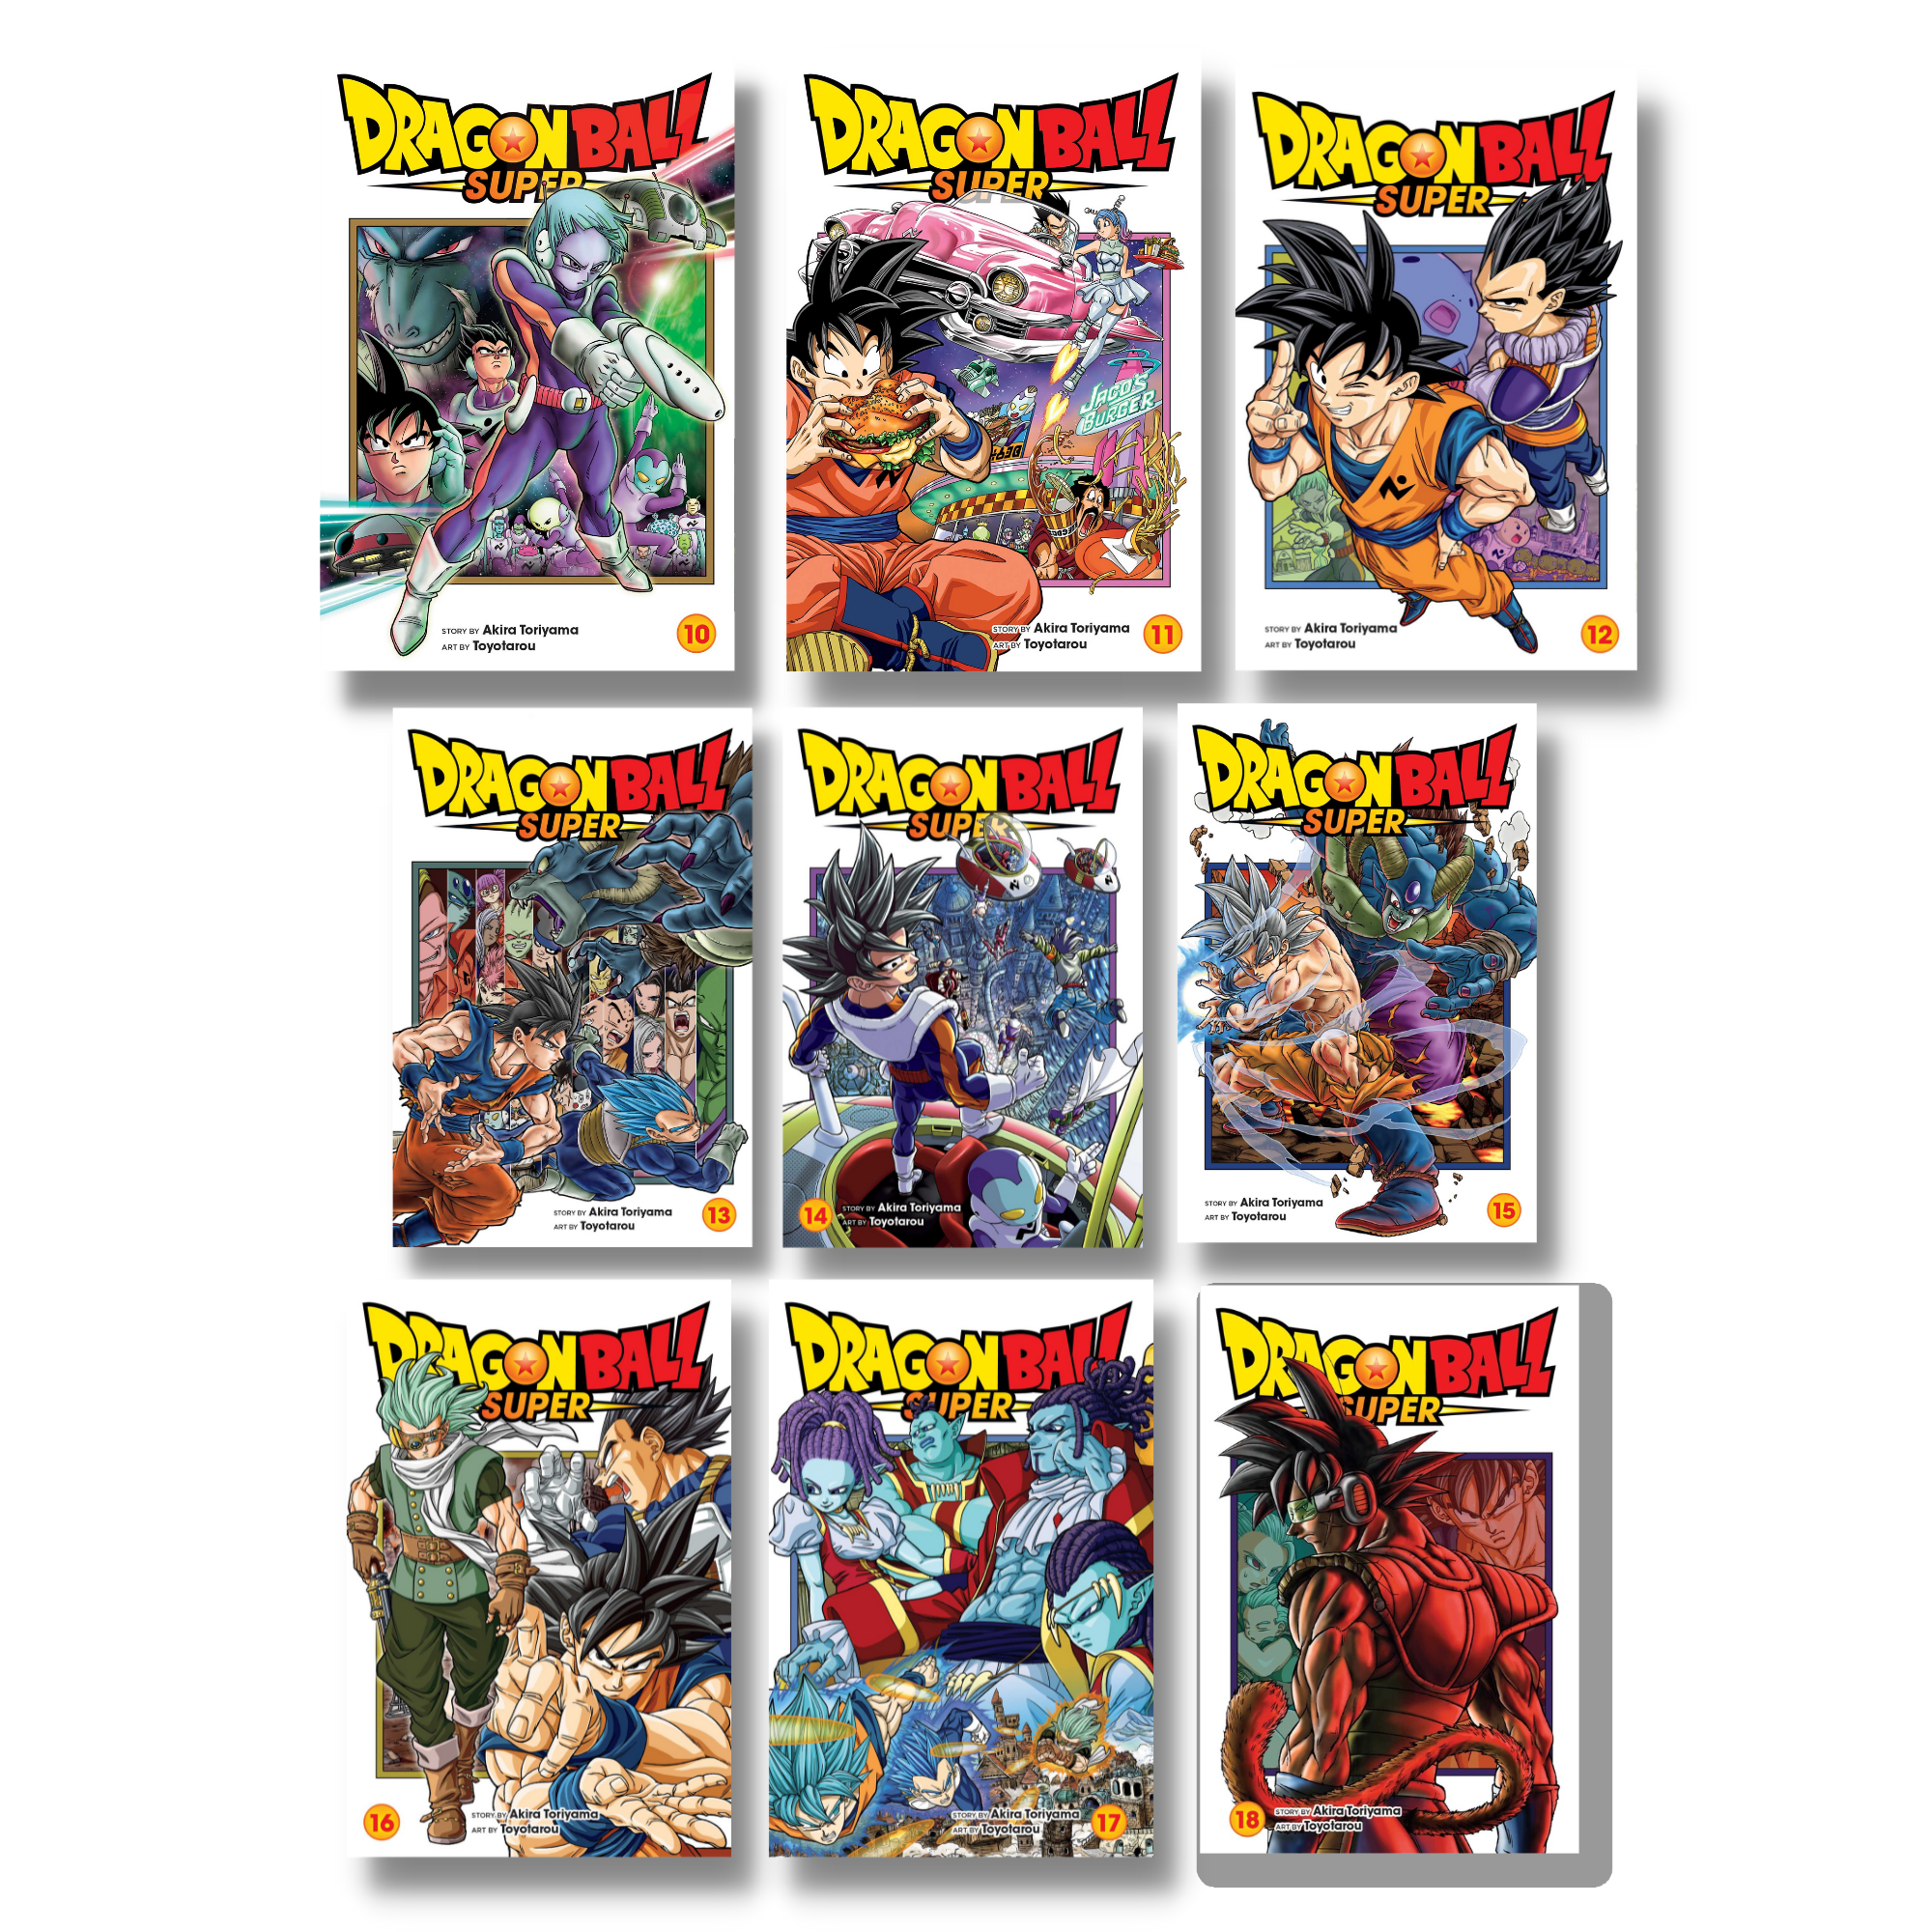 Dragon Ball Super Vol. 16